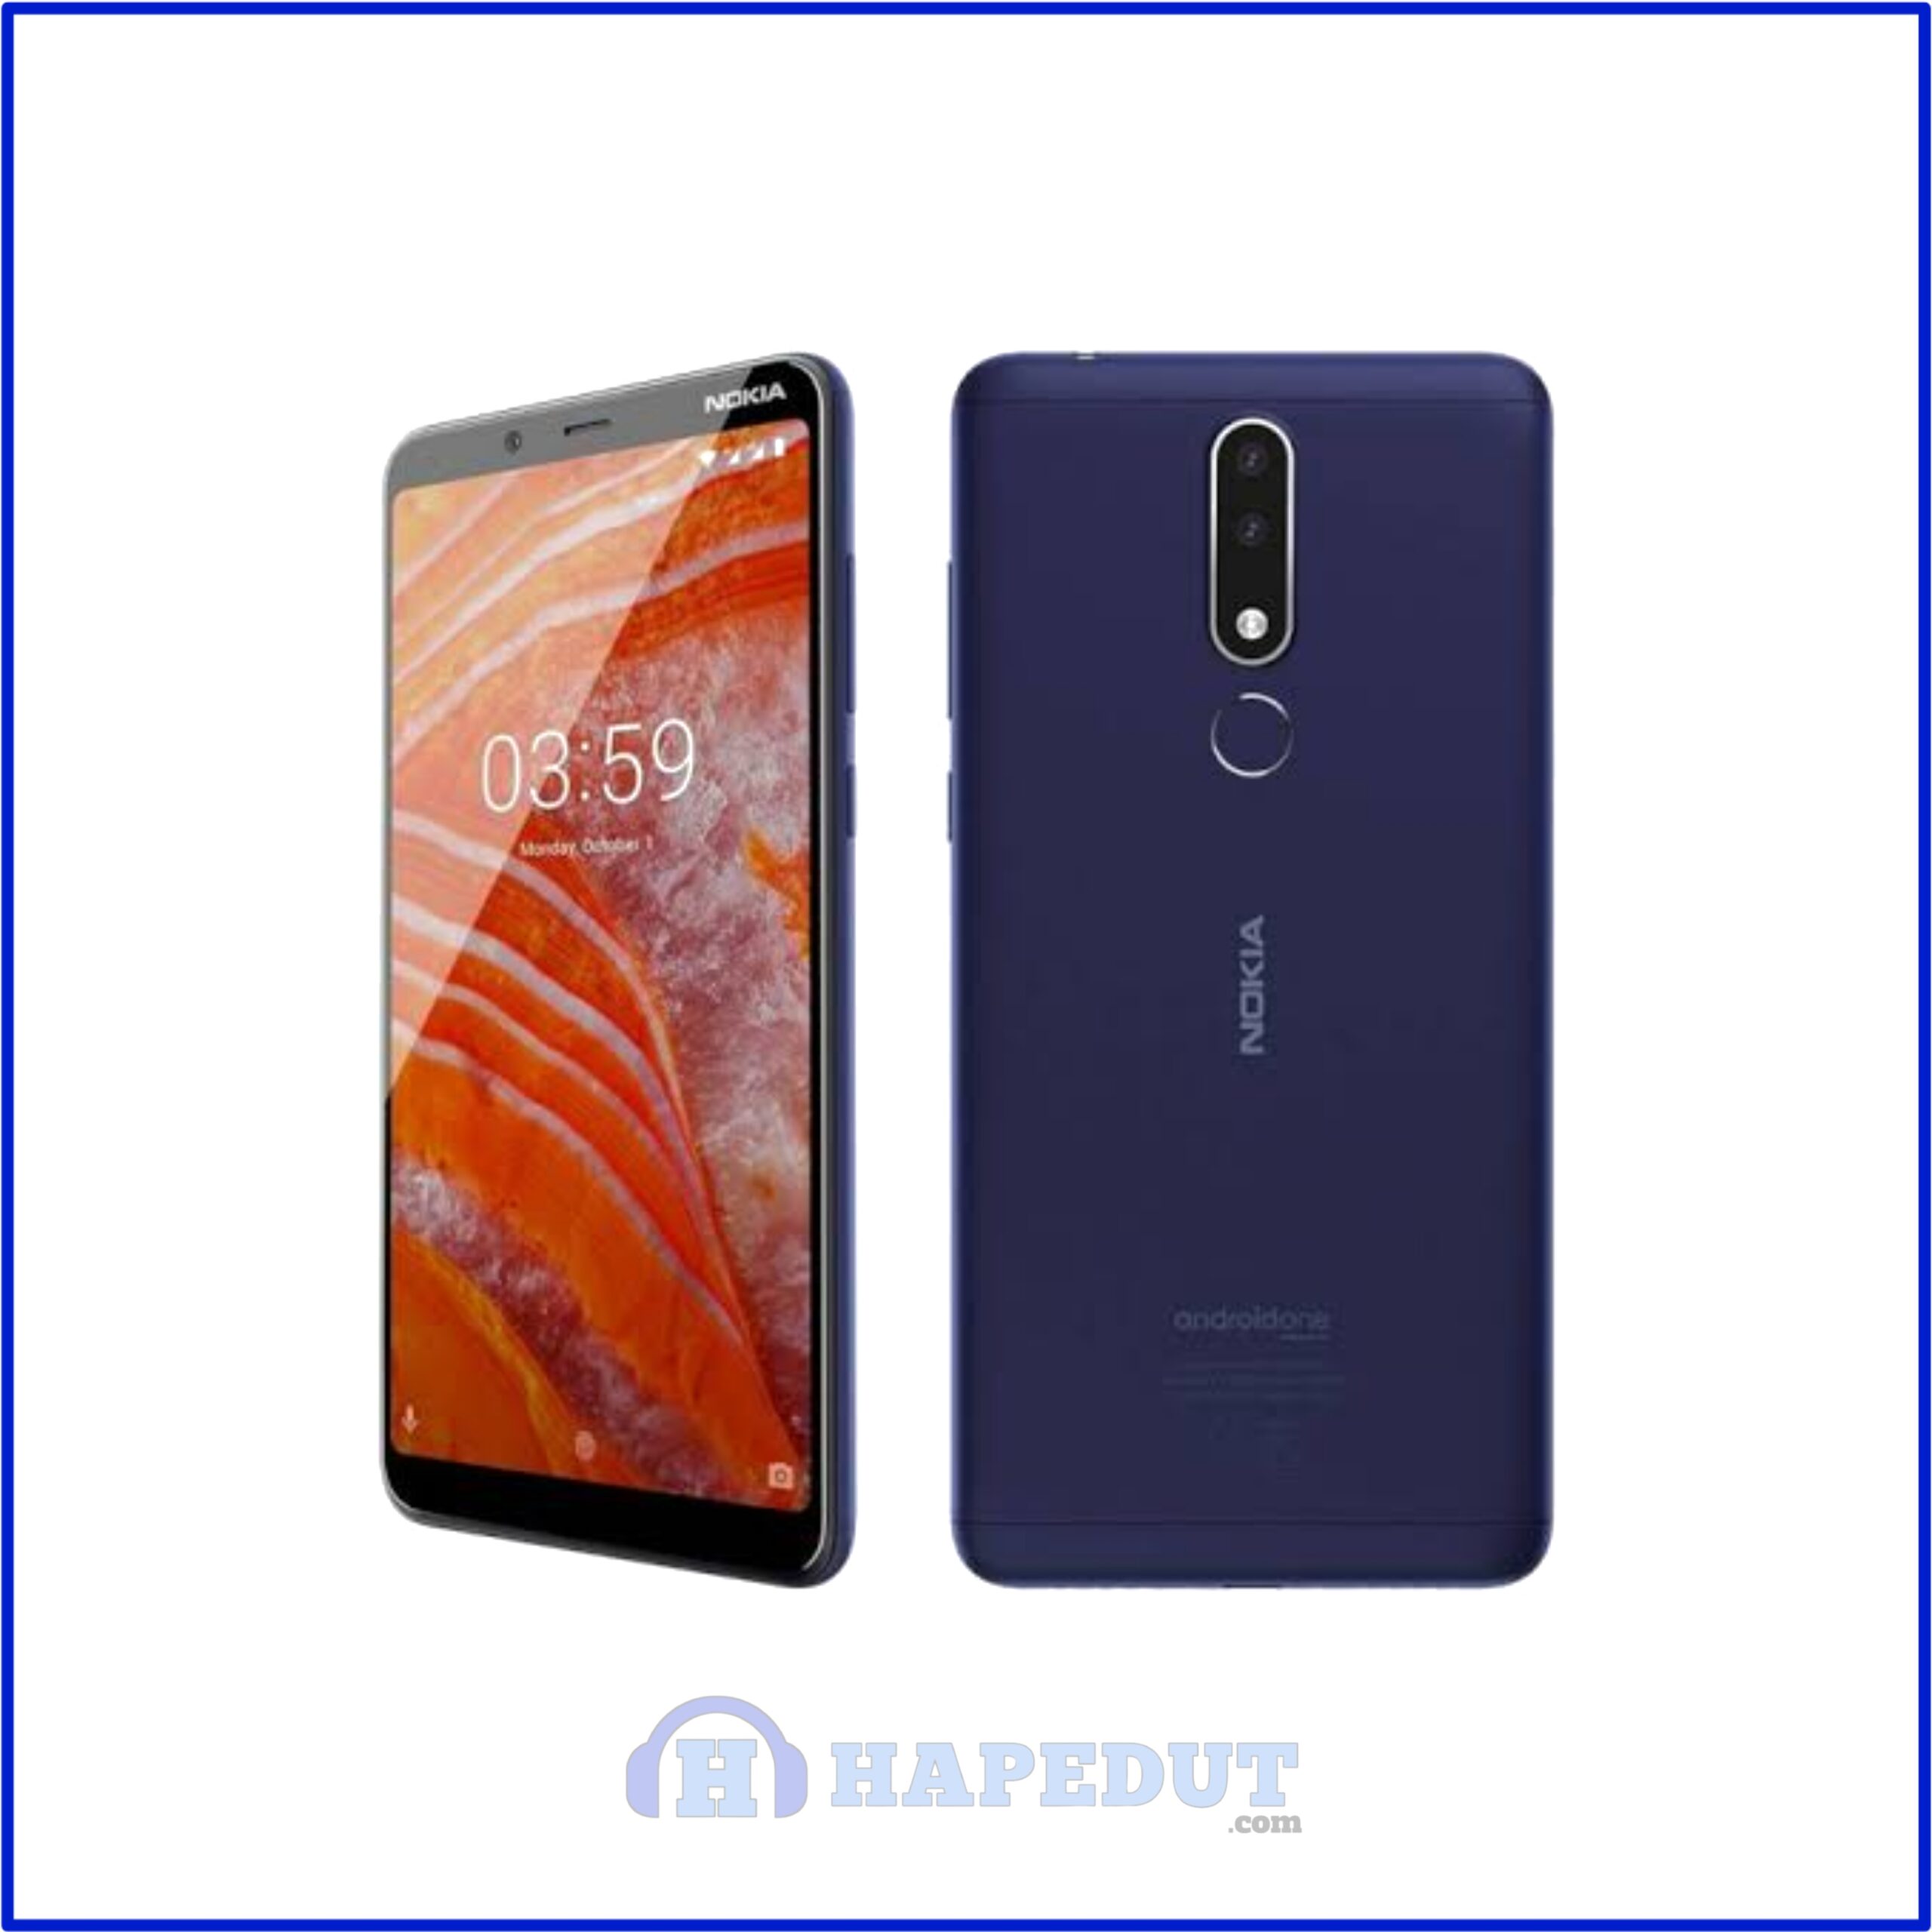 Nokia 3.1 Plus : Hapedut